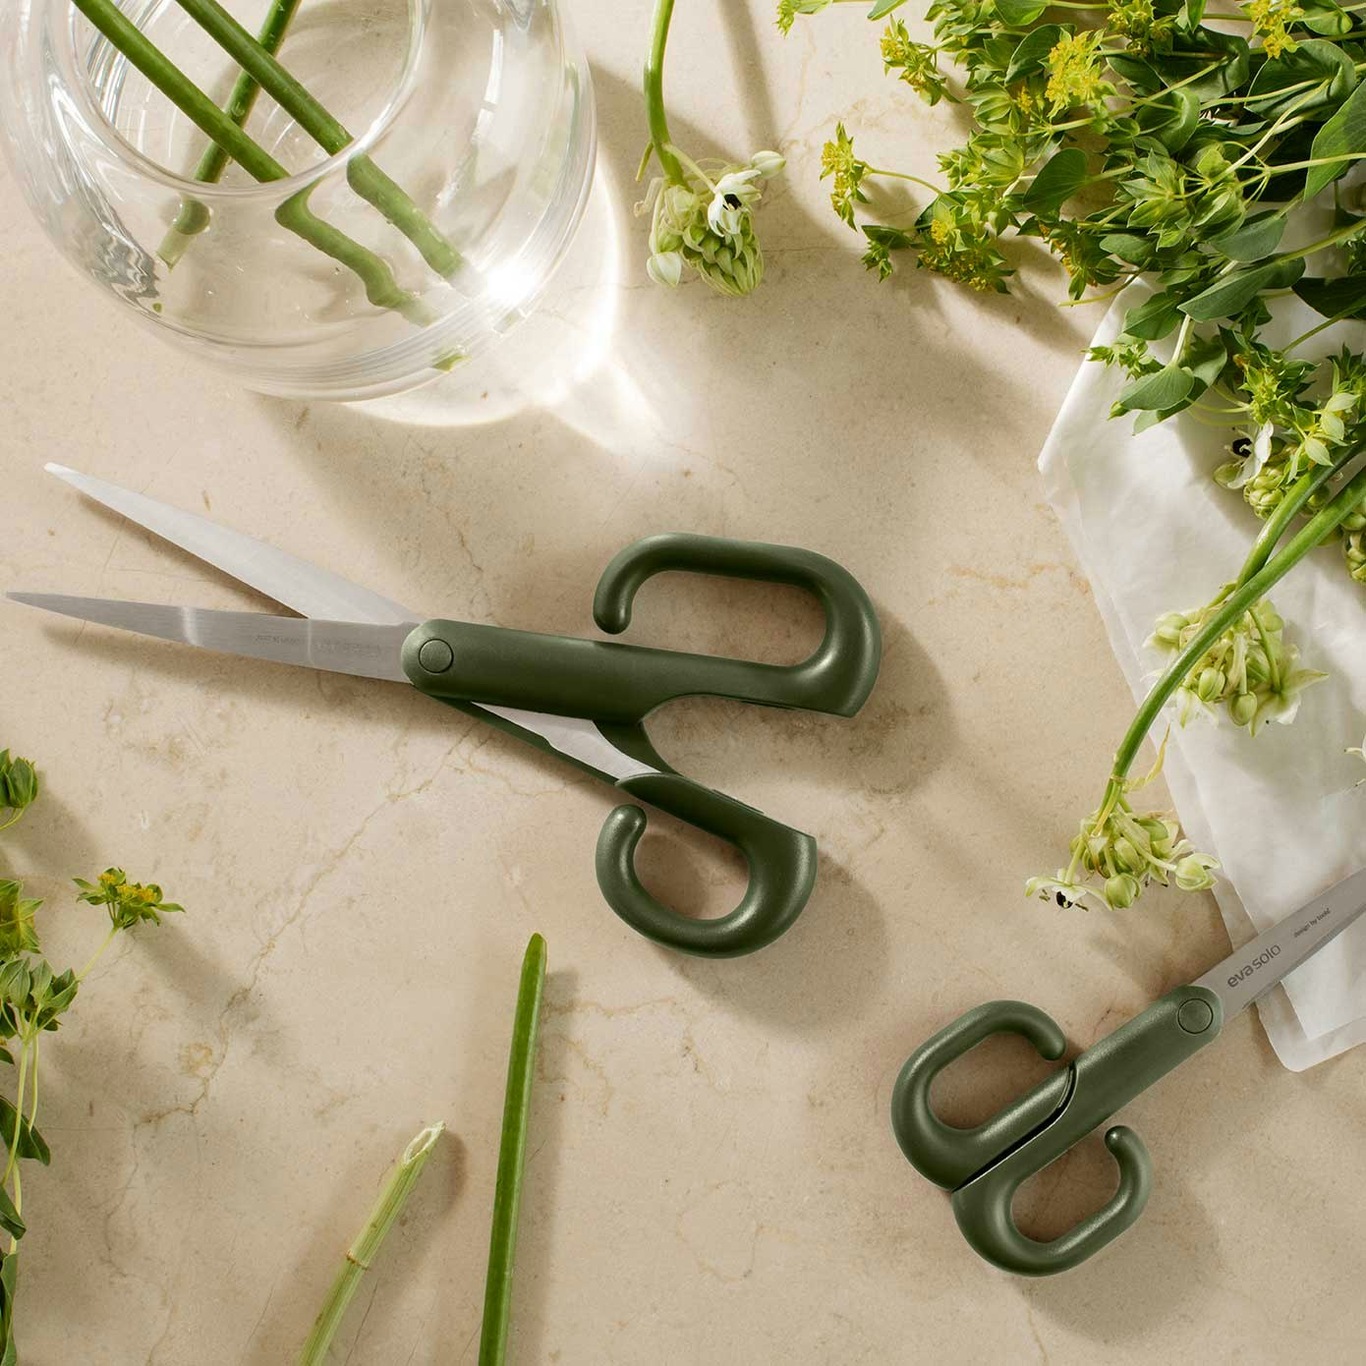 https://royaldesign.com/image/2/eva-solo-green-tools-scissor-16-cm-0?w=800&quality=80